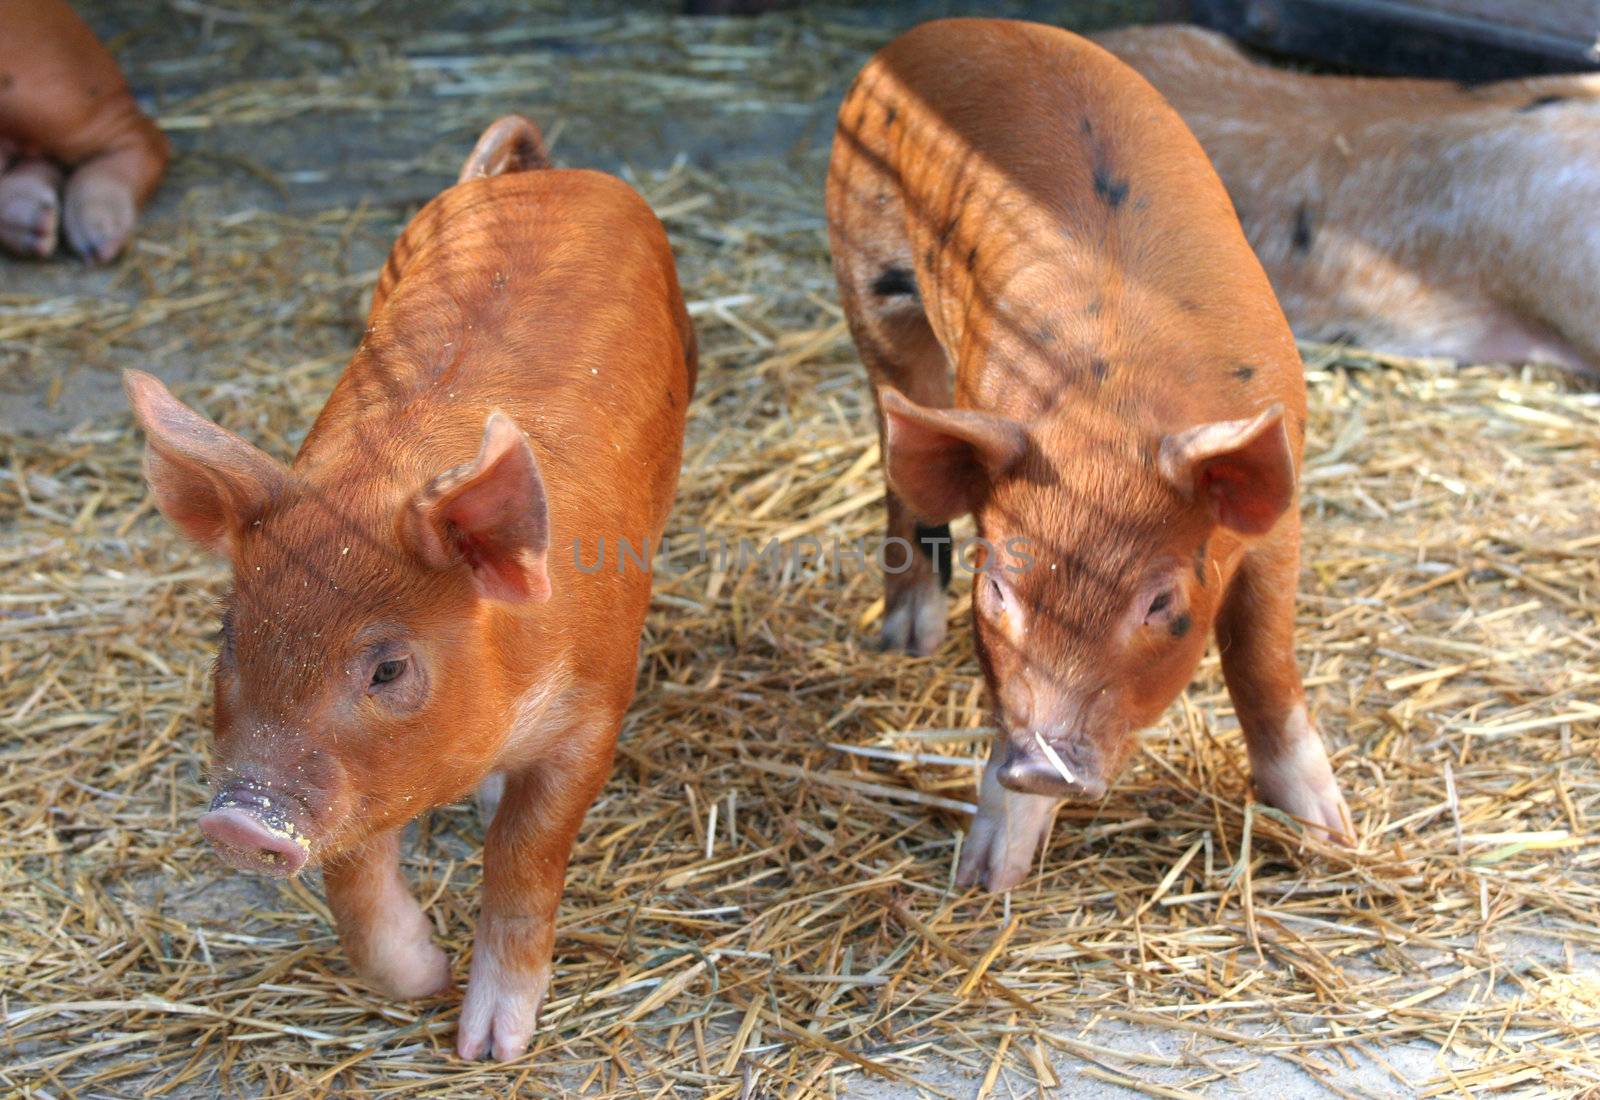 Two piglets by jarenwicklund